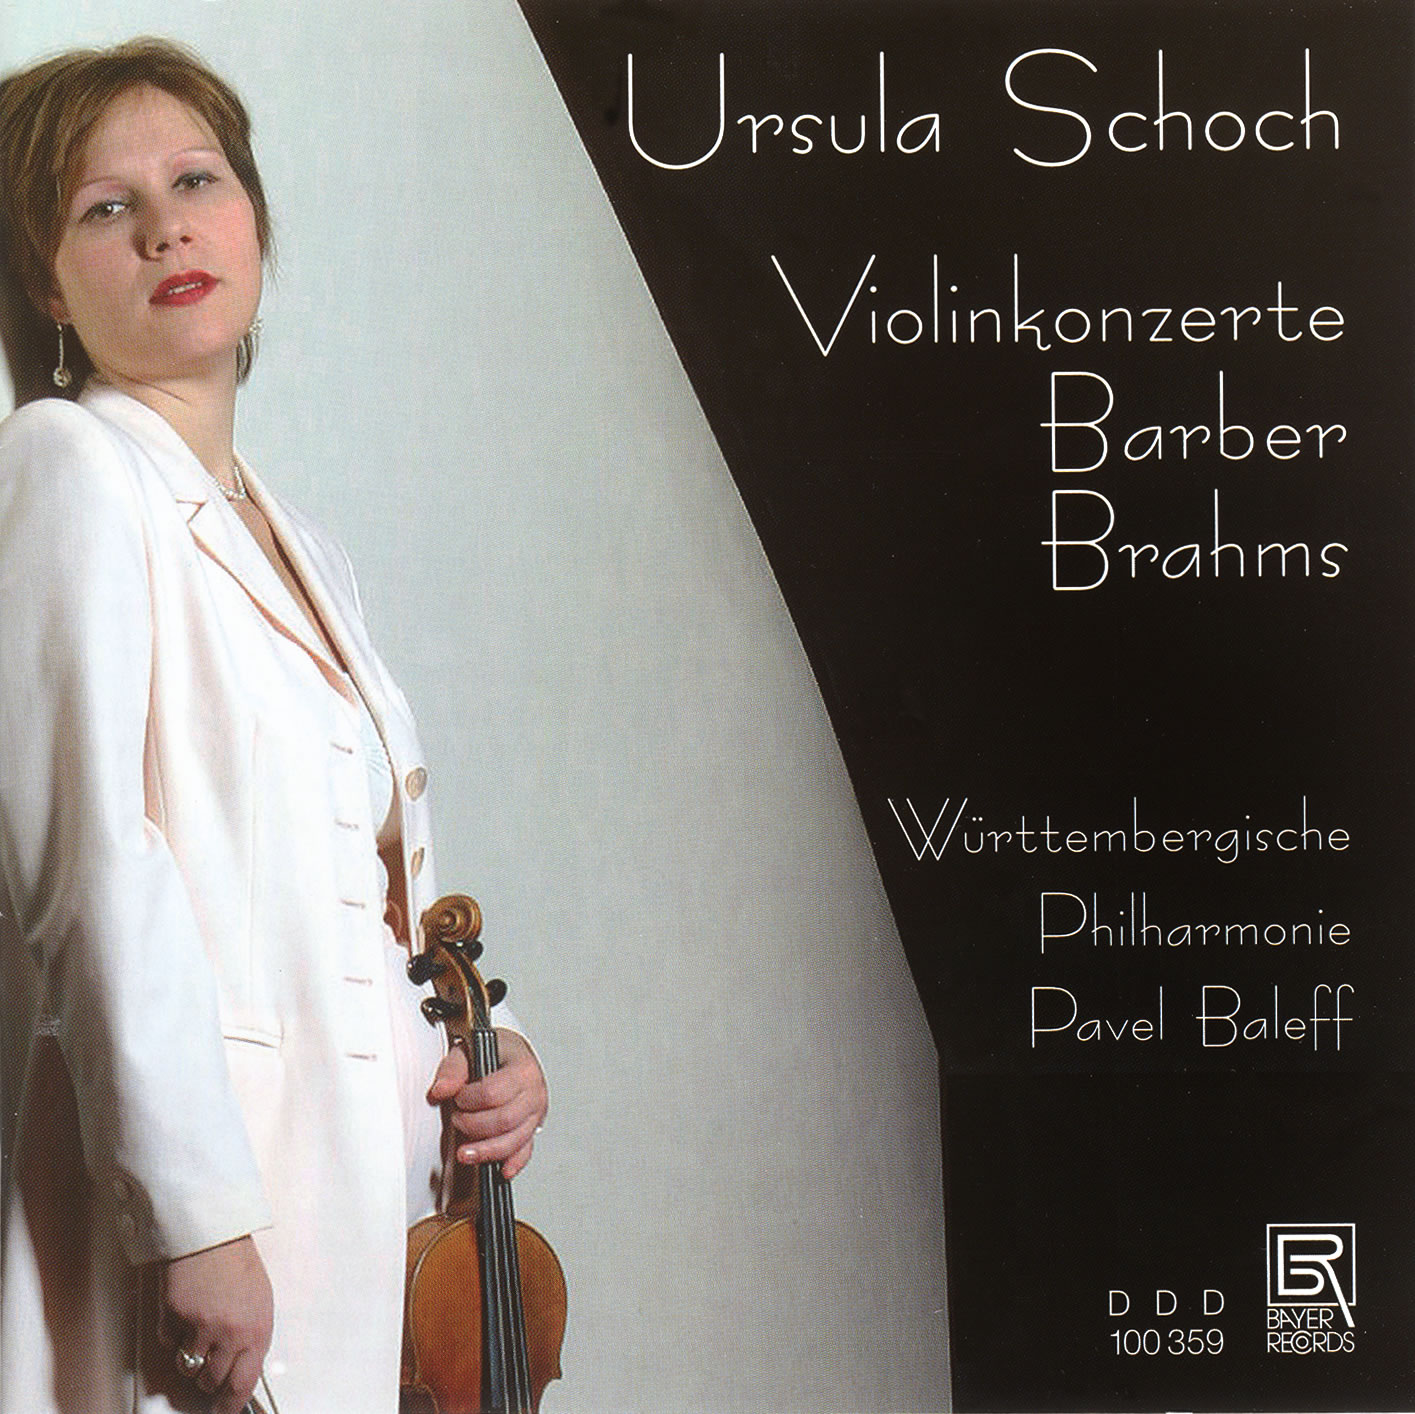 Ursula Schoch spielt Violinkonzerte von Barber und Brahms